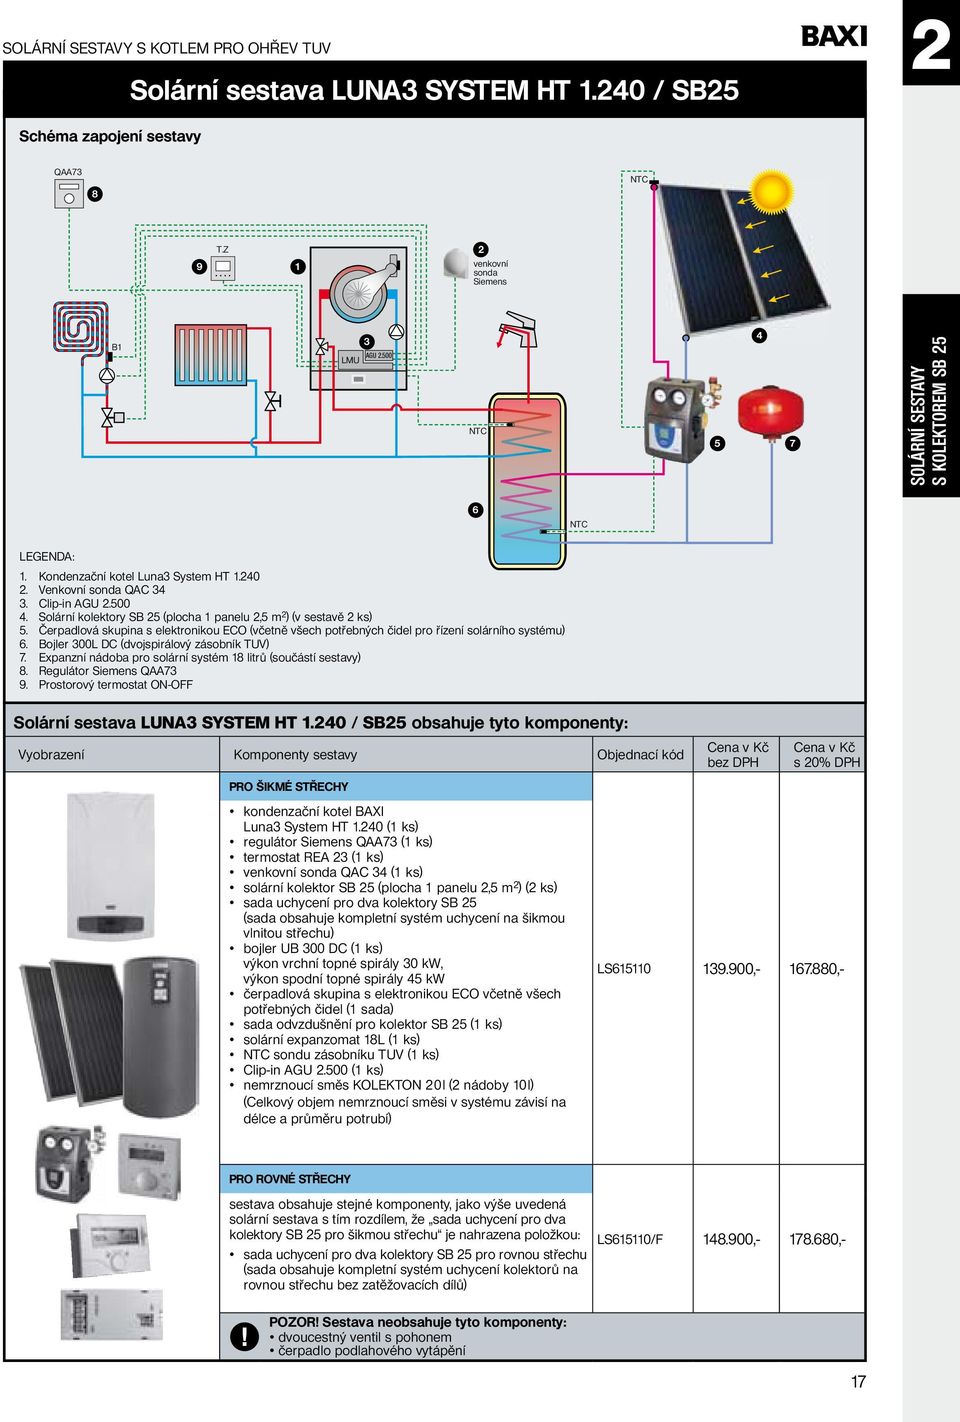 Bojler 00l DC (dvojspirálový zásobník tuv) 7. expanzní nádoba pro solární systém 8 litrů (součástí sestavy) 8. regulátor Siemens QAA7 9. prostorový termostat on-off Solární sestava LUNA SYSTEM HT.